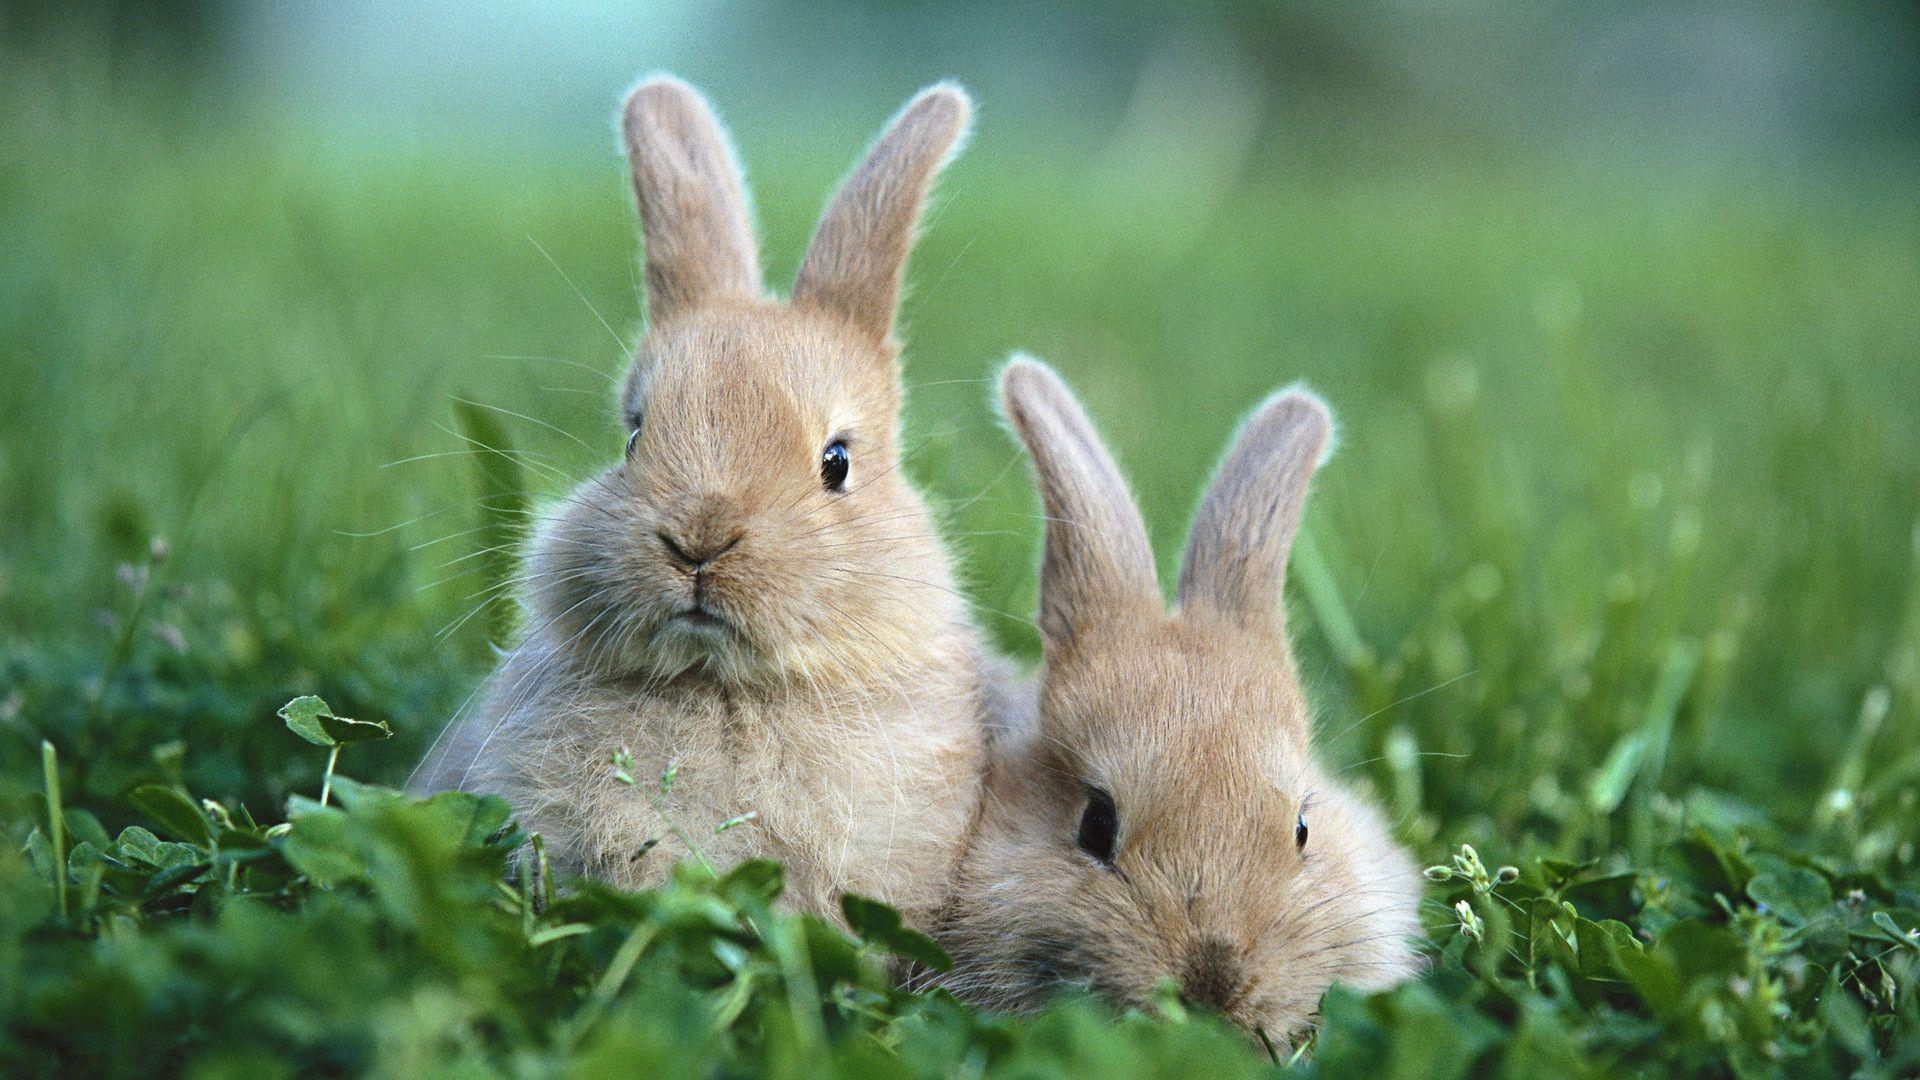 Cute Bunnies (id: 162936)